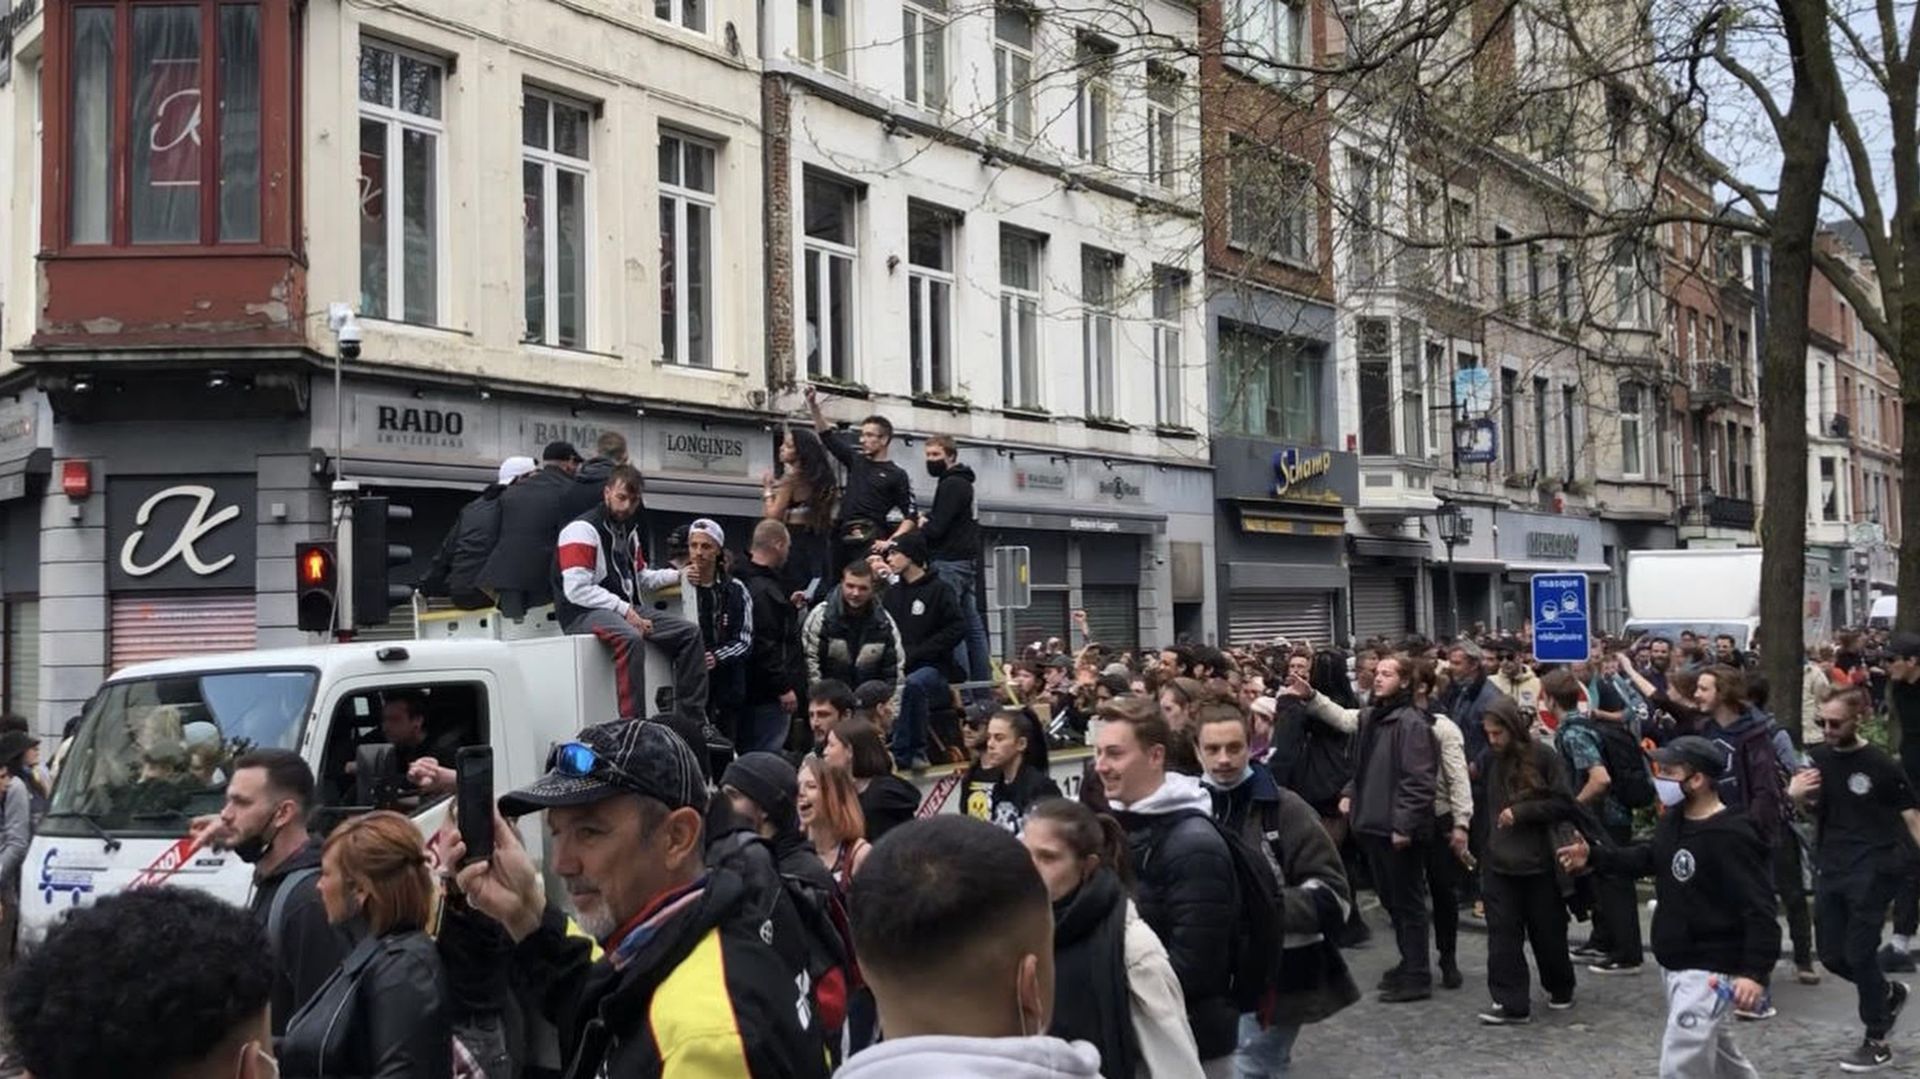 Quatorze arrestations administratives ont eu lieu en marge d'un cortège dans les rues de Liège samedi après-midi. 